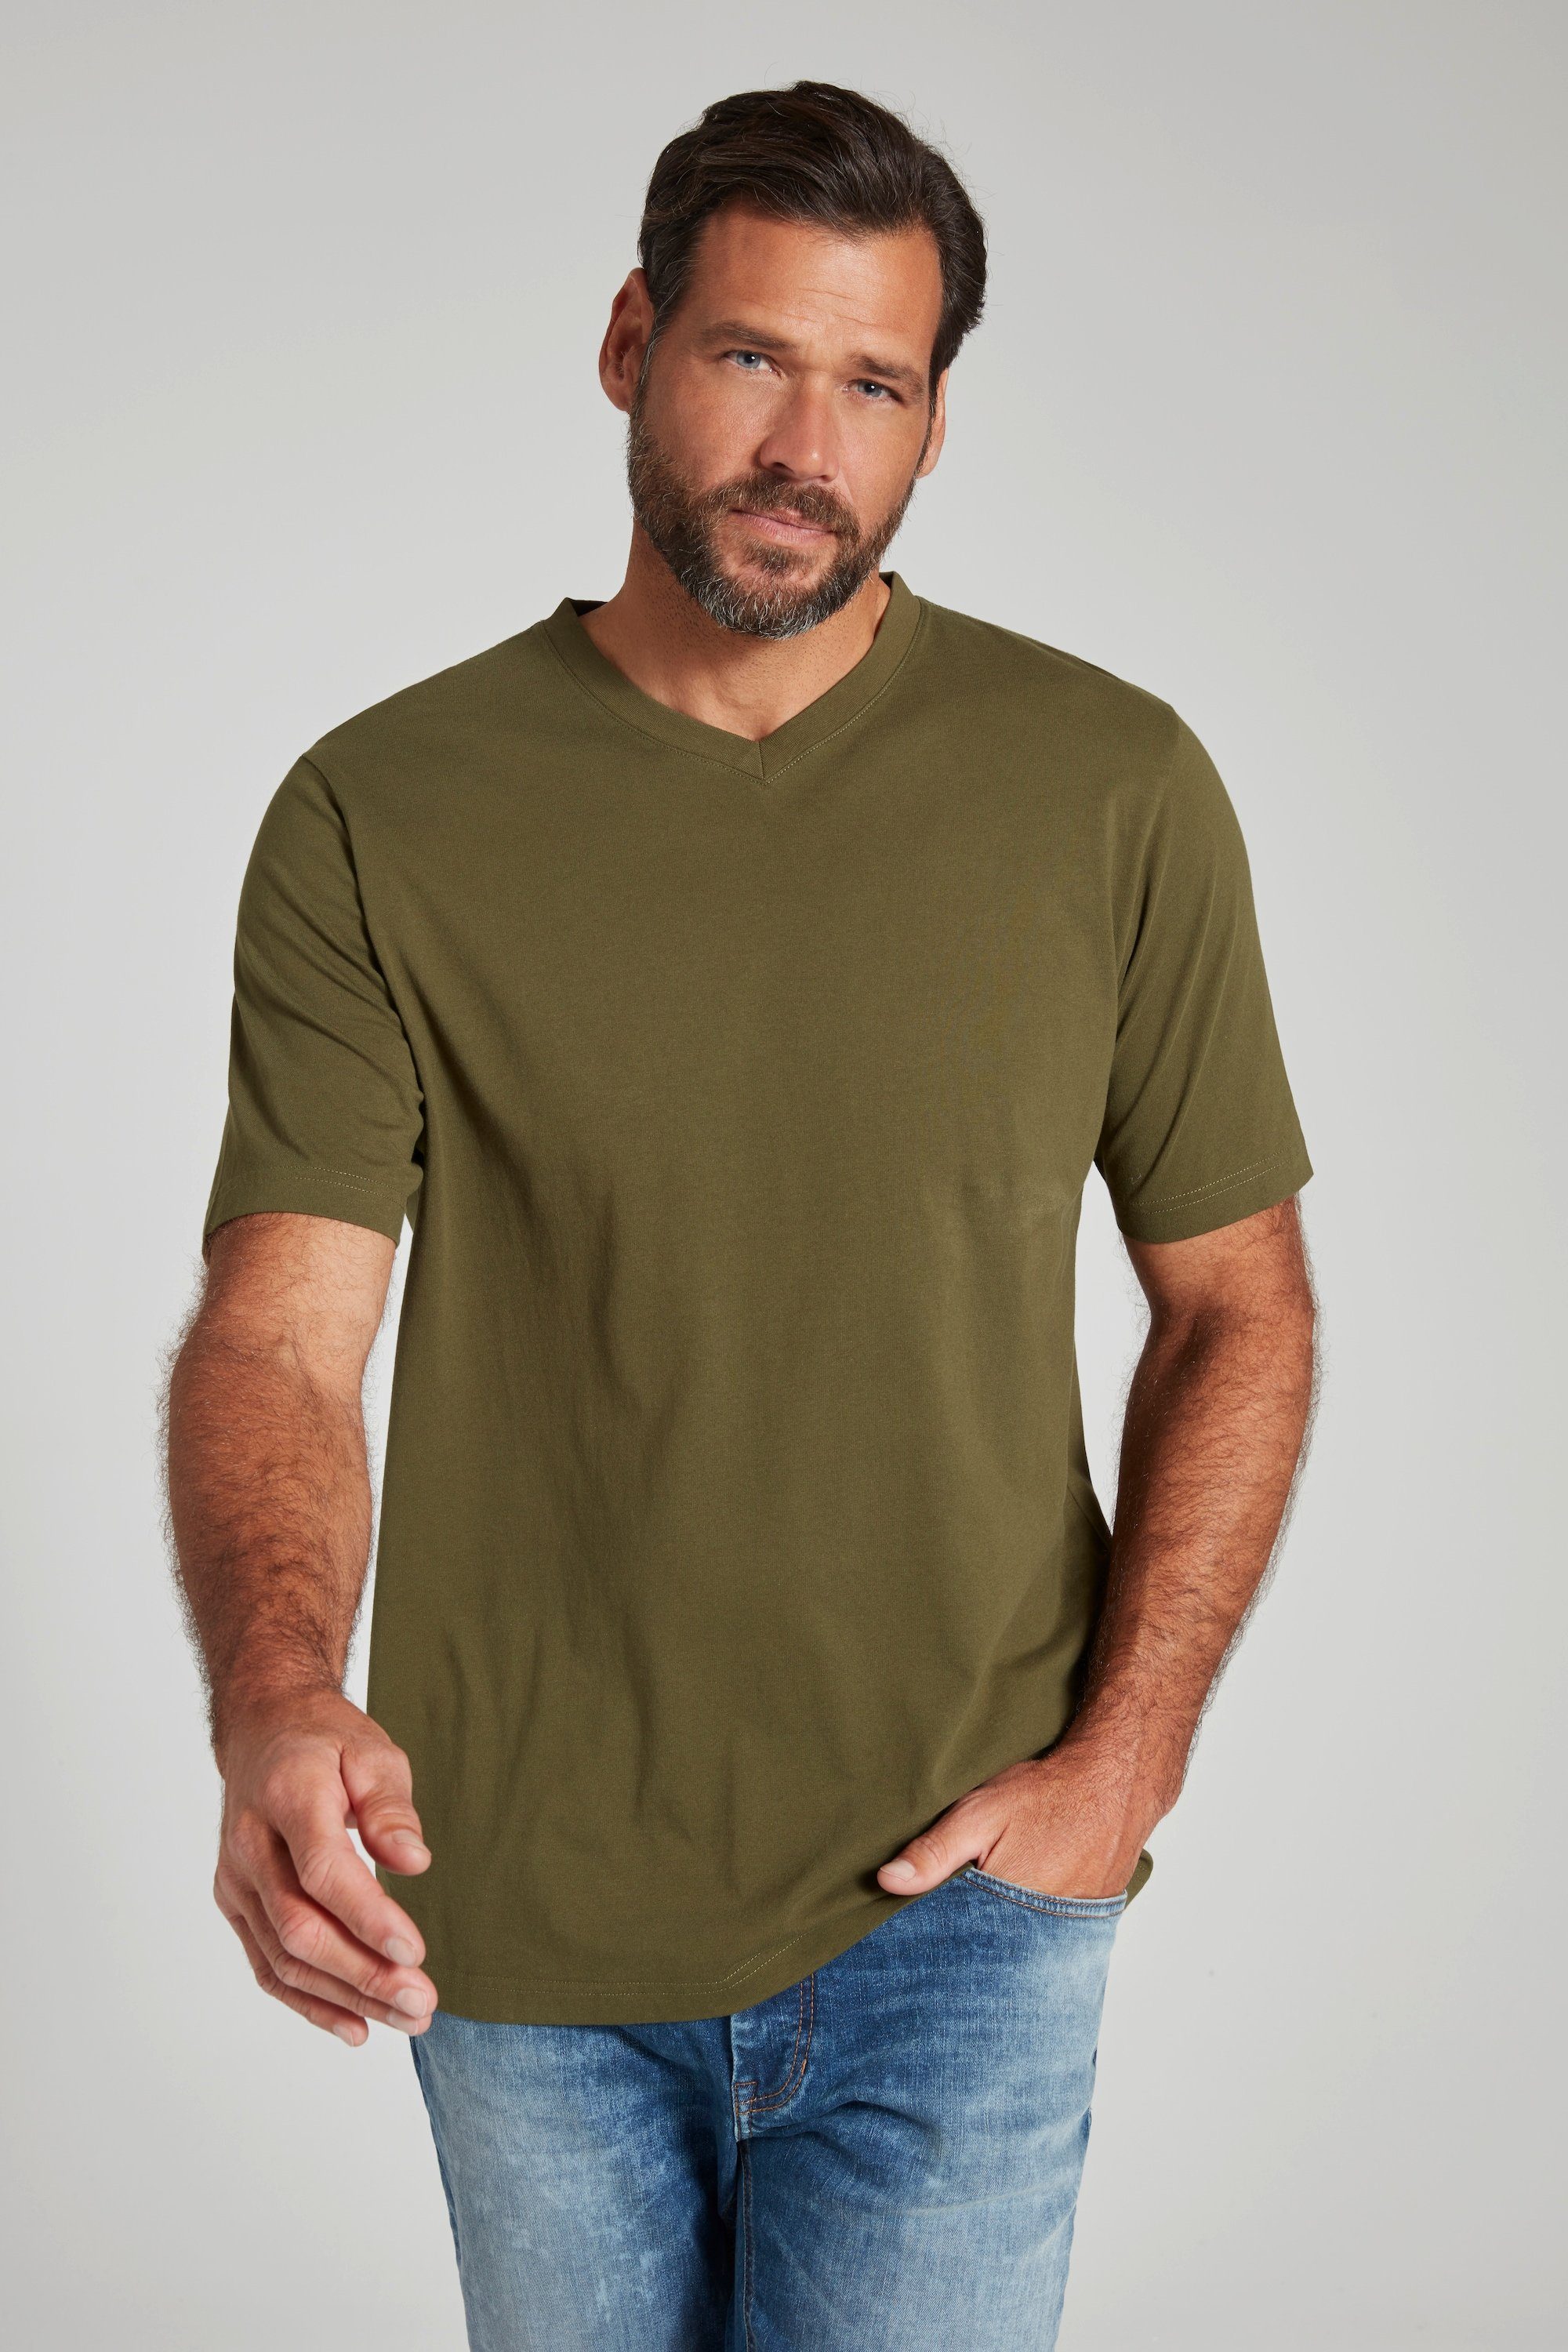 T-Shirt T-Shirt khaki V-Ausschnitt JP1880 8XL Basic dunkel bis